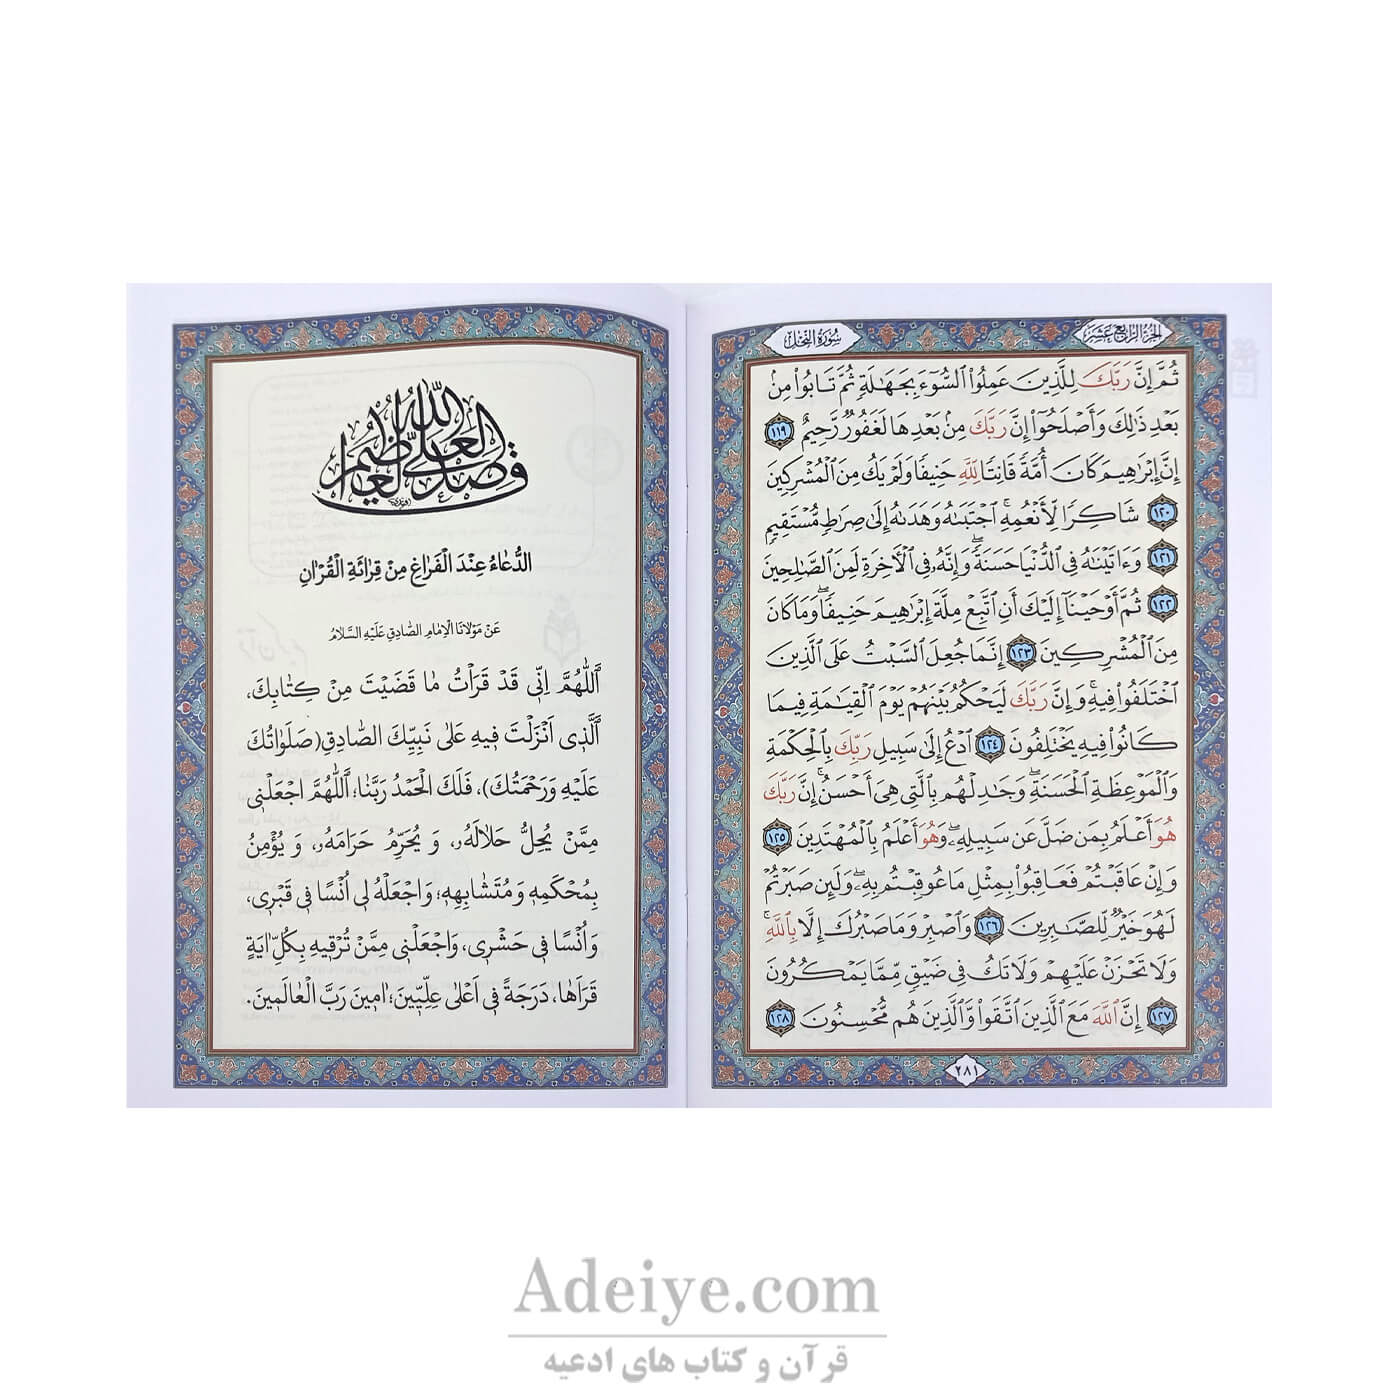 قرآن 30 پاره کیفی اسوه چاپ رنگی بدون ترجمه-عکس متن3